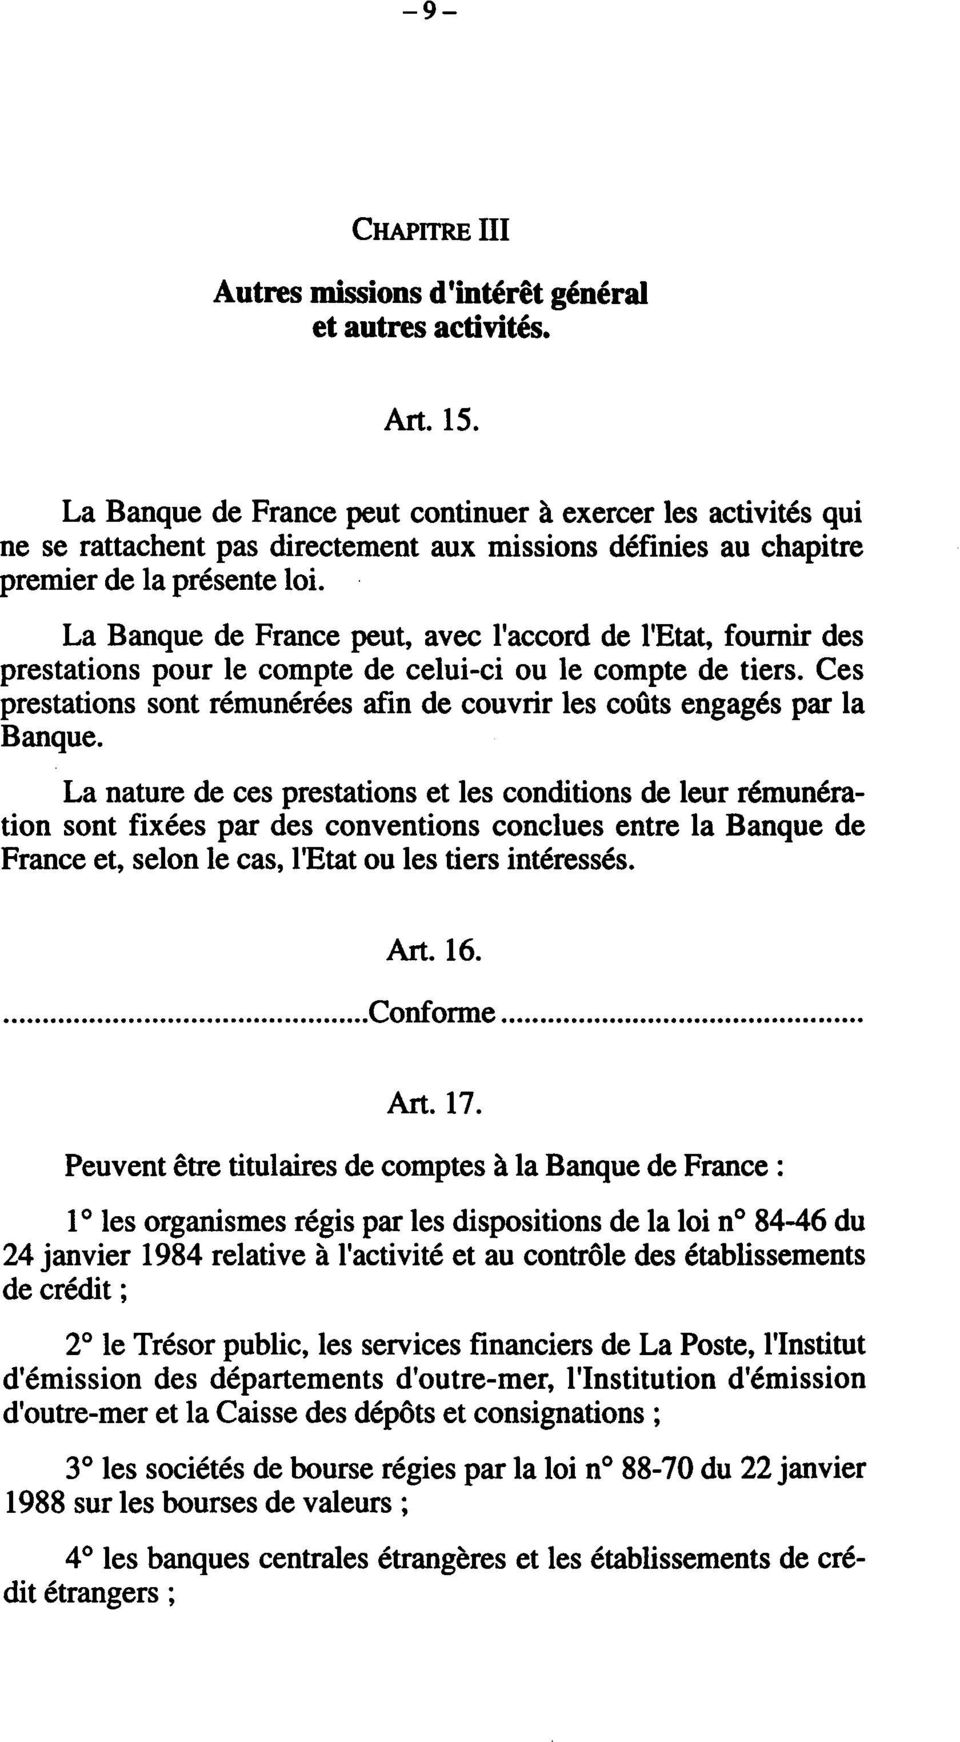 La Banque de France peut, avec l'accord de l'etat, fournir des prestations pour le compte de celui-ci ou le compte de tiers.